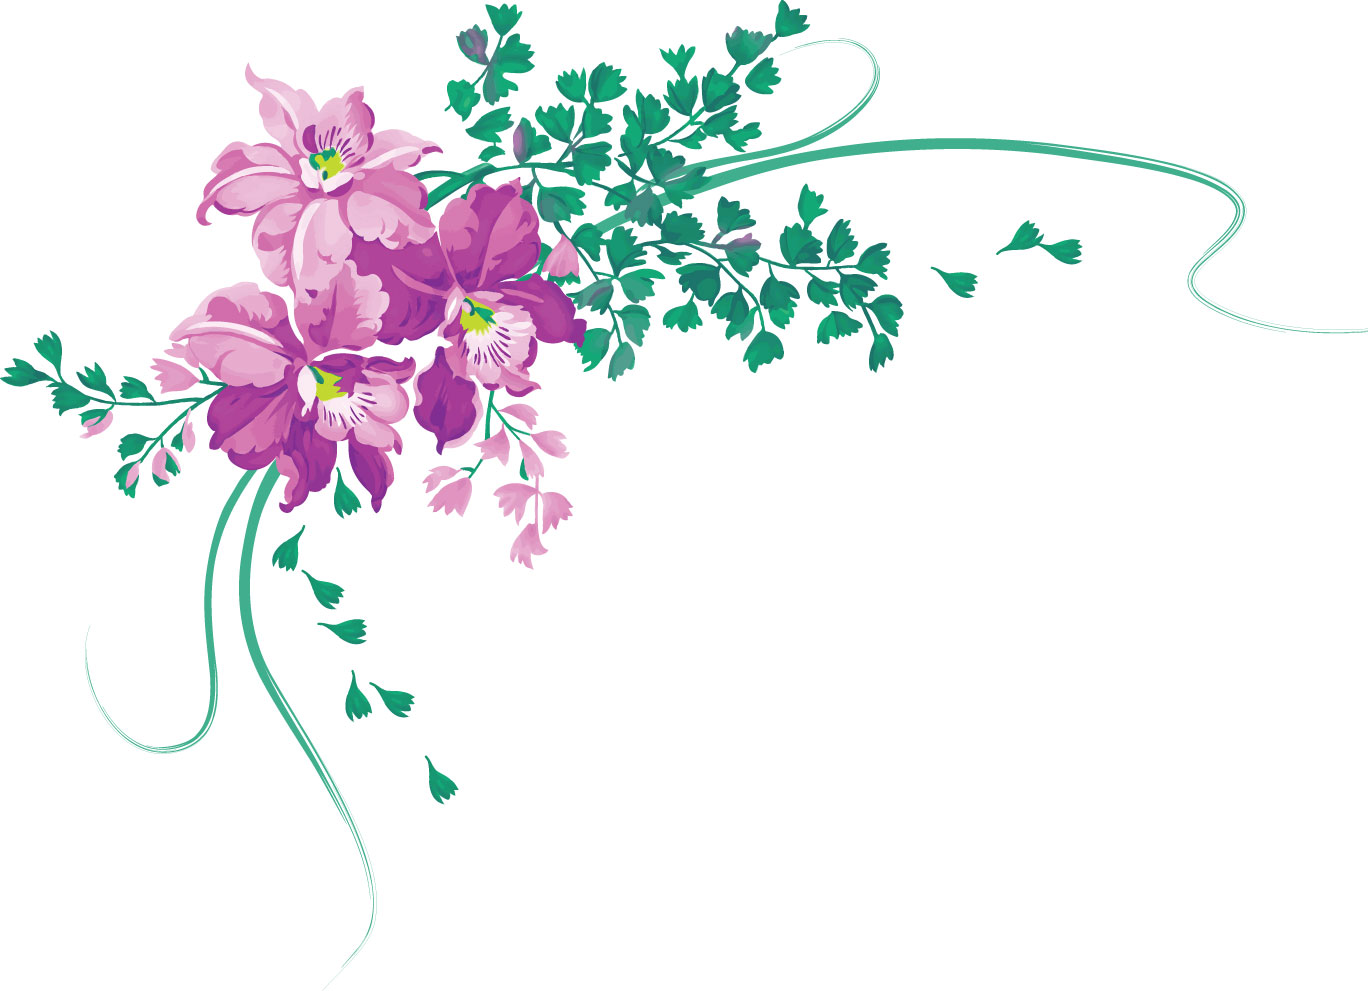 リアルな花のイラスト フリー素材 角 コーナー用no 1485 紫 散る葉